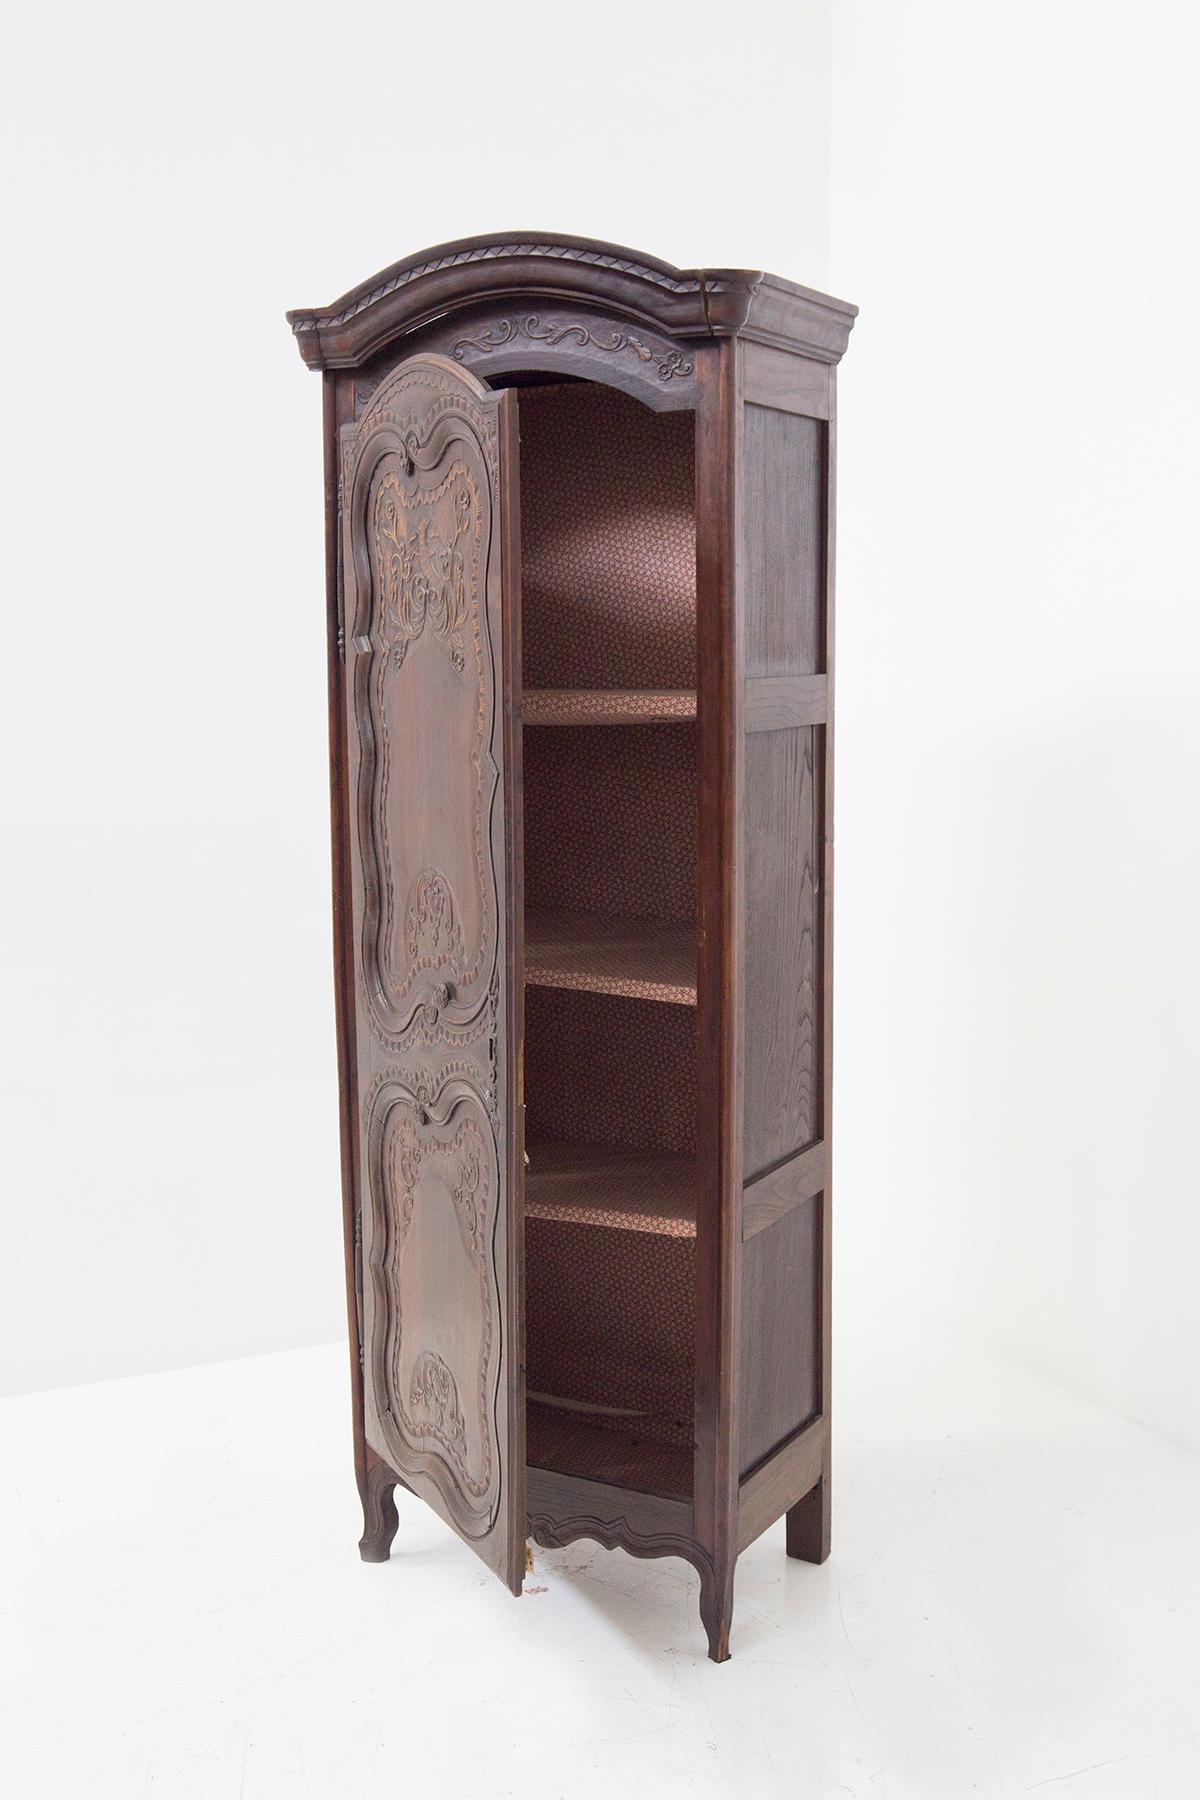 Rare meuble en bois du XVIIIe siècle de style Louis XV, de belle facture française.
Le meuble est entièrement réalisé en bois fin et foncé, avec quatre pieds pour le soutenir. Les deux jambes à l'avant sont plus travaillées et fines, très